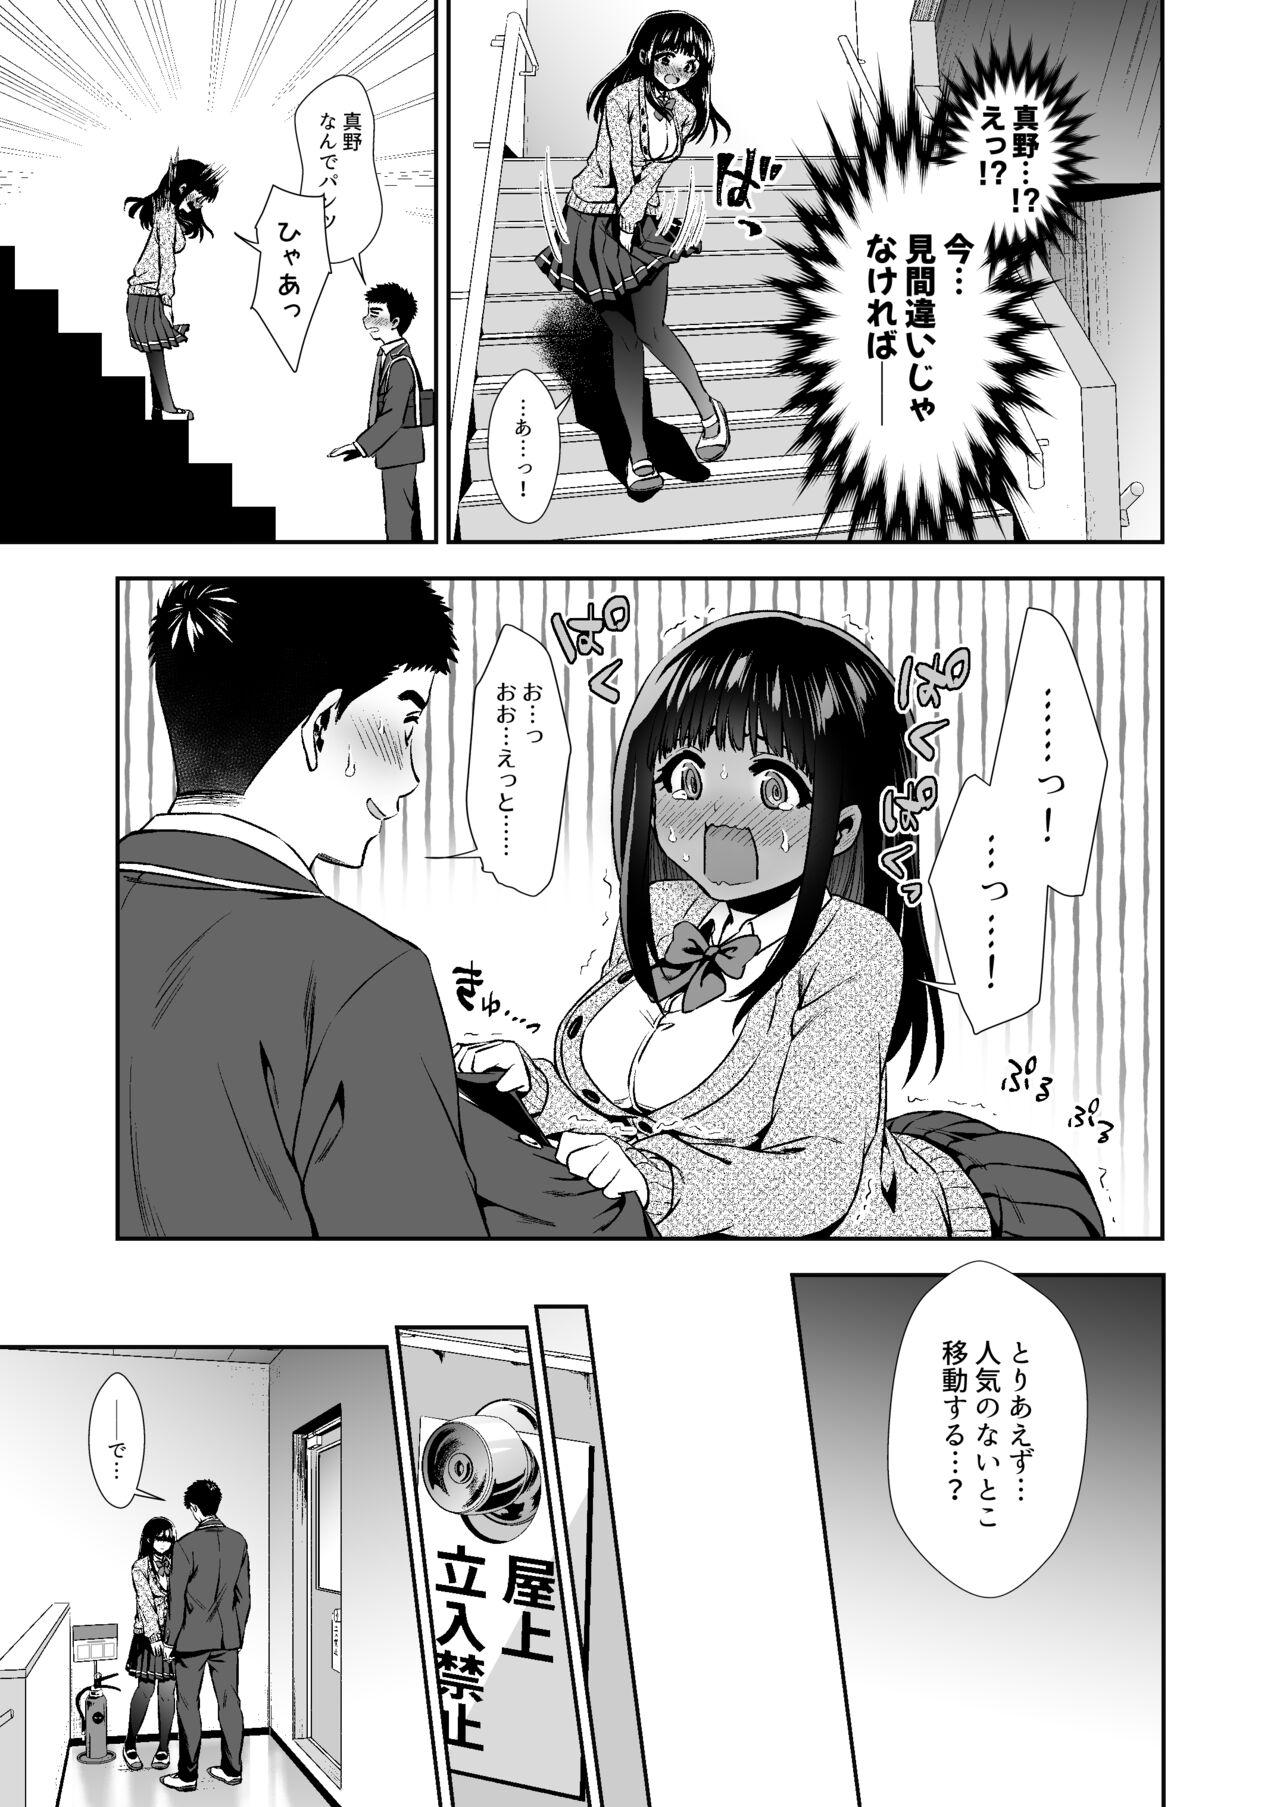 Stripper [TORINOYA (Tori no Karaage)] Pure na Jimiko #0 Kimi to, Hajimete. -Pure na Jimiko no Himegoto- Episode 1 - Original Putaria - Page 11